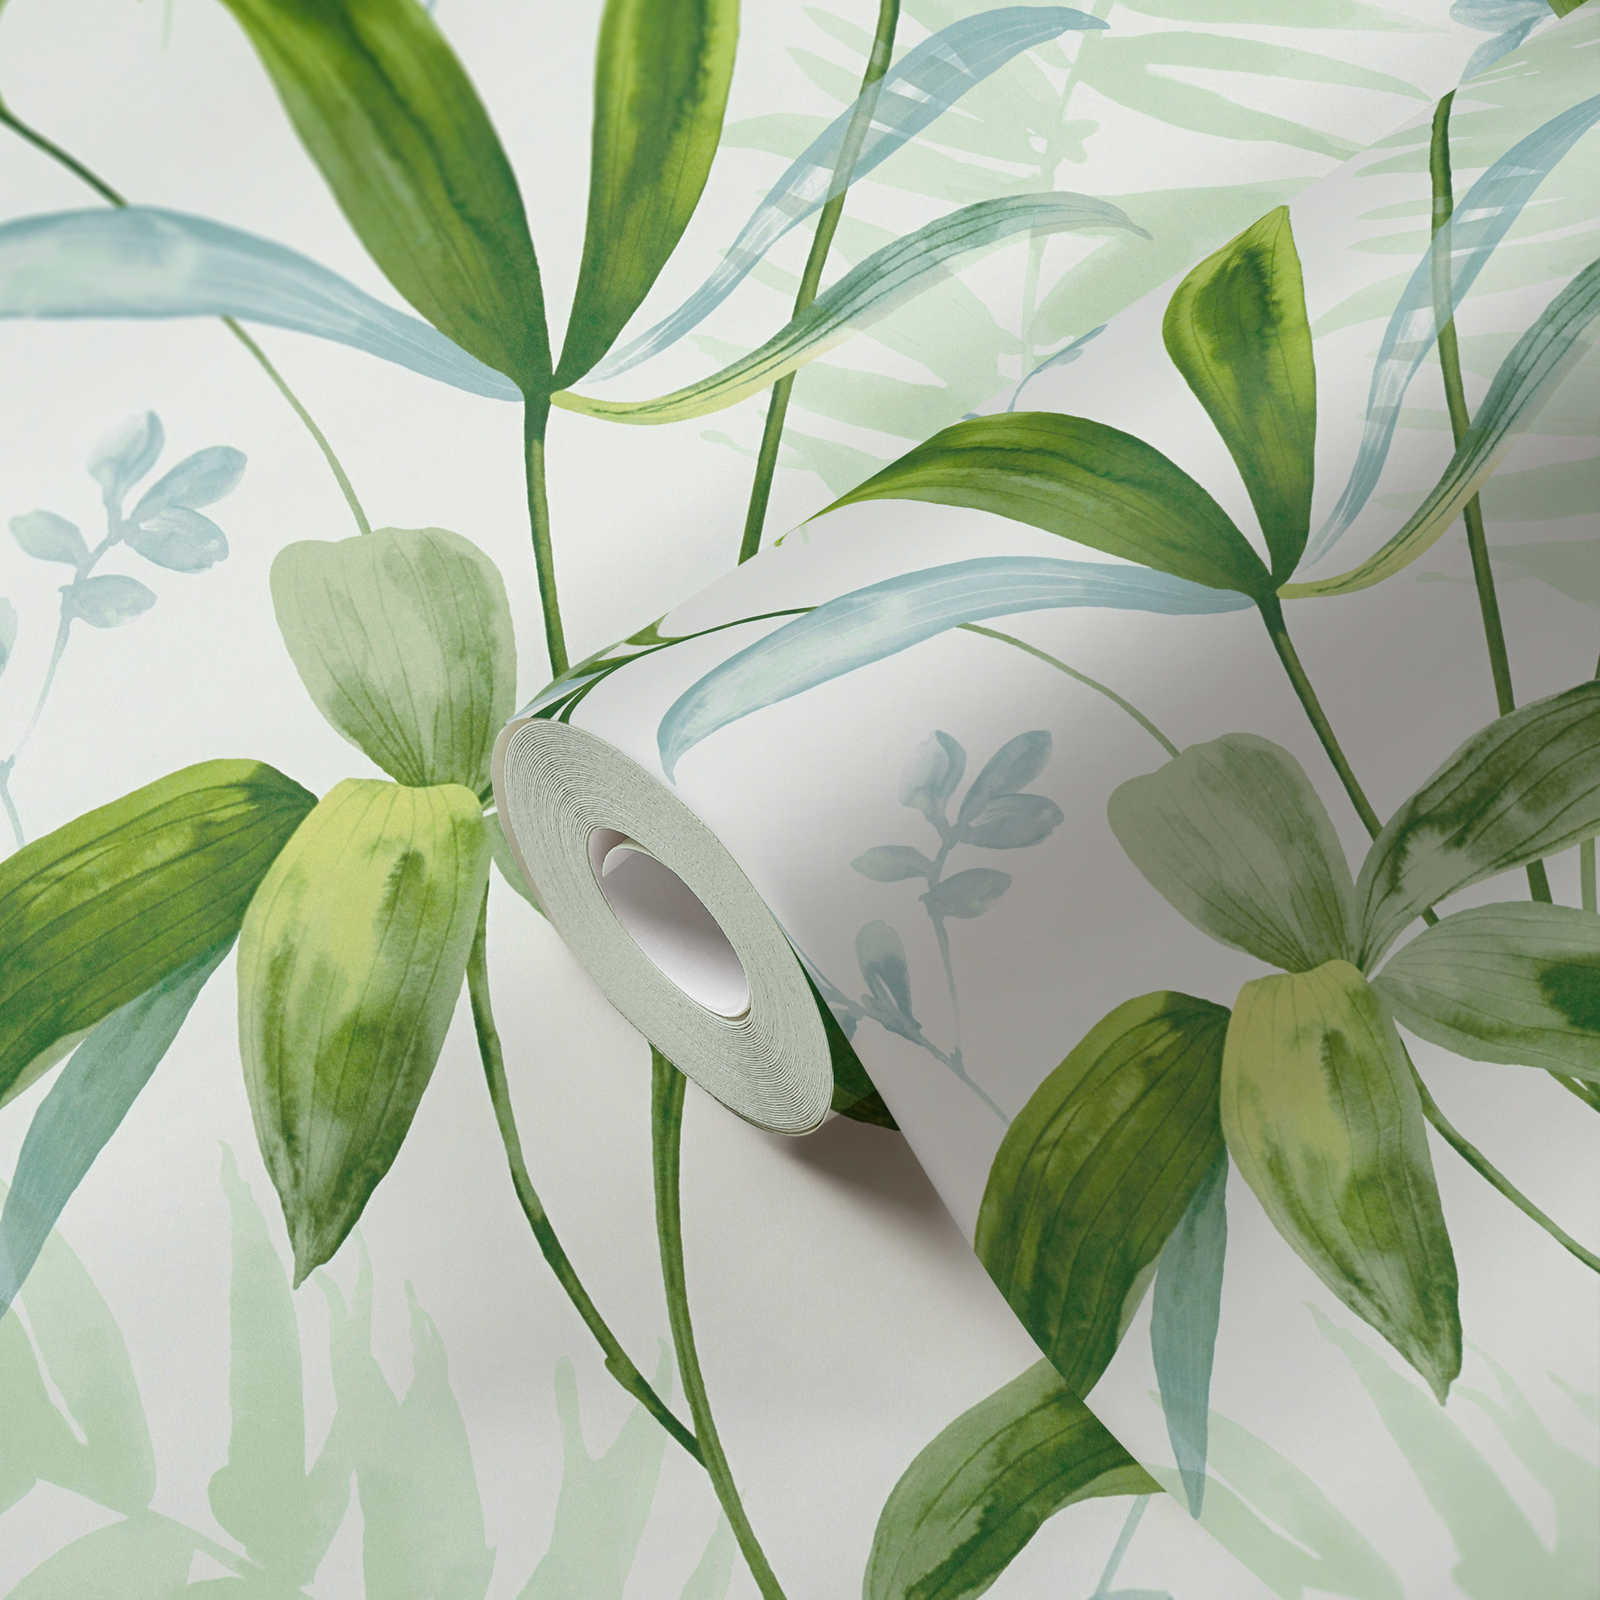             Vliestapete grüne Blätter im Aquarell Stil – Grün, Weiß
        